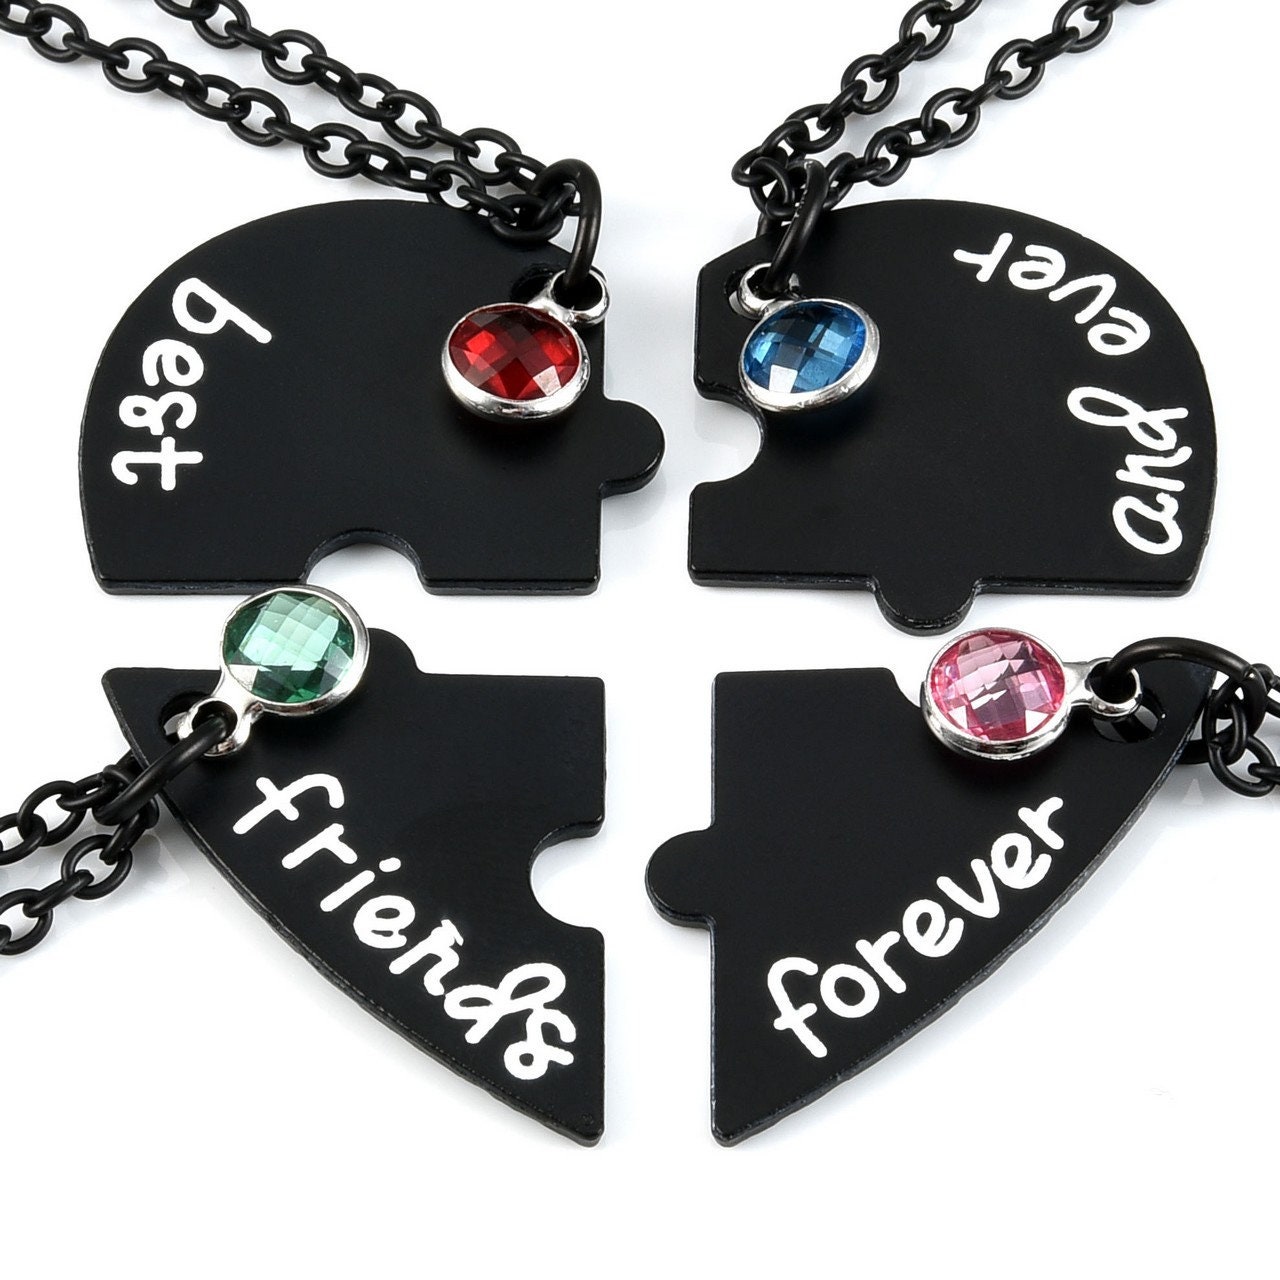 4 Best Friend Necklaces Puzzle Piece Necklace Best Friends | Etsy